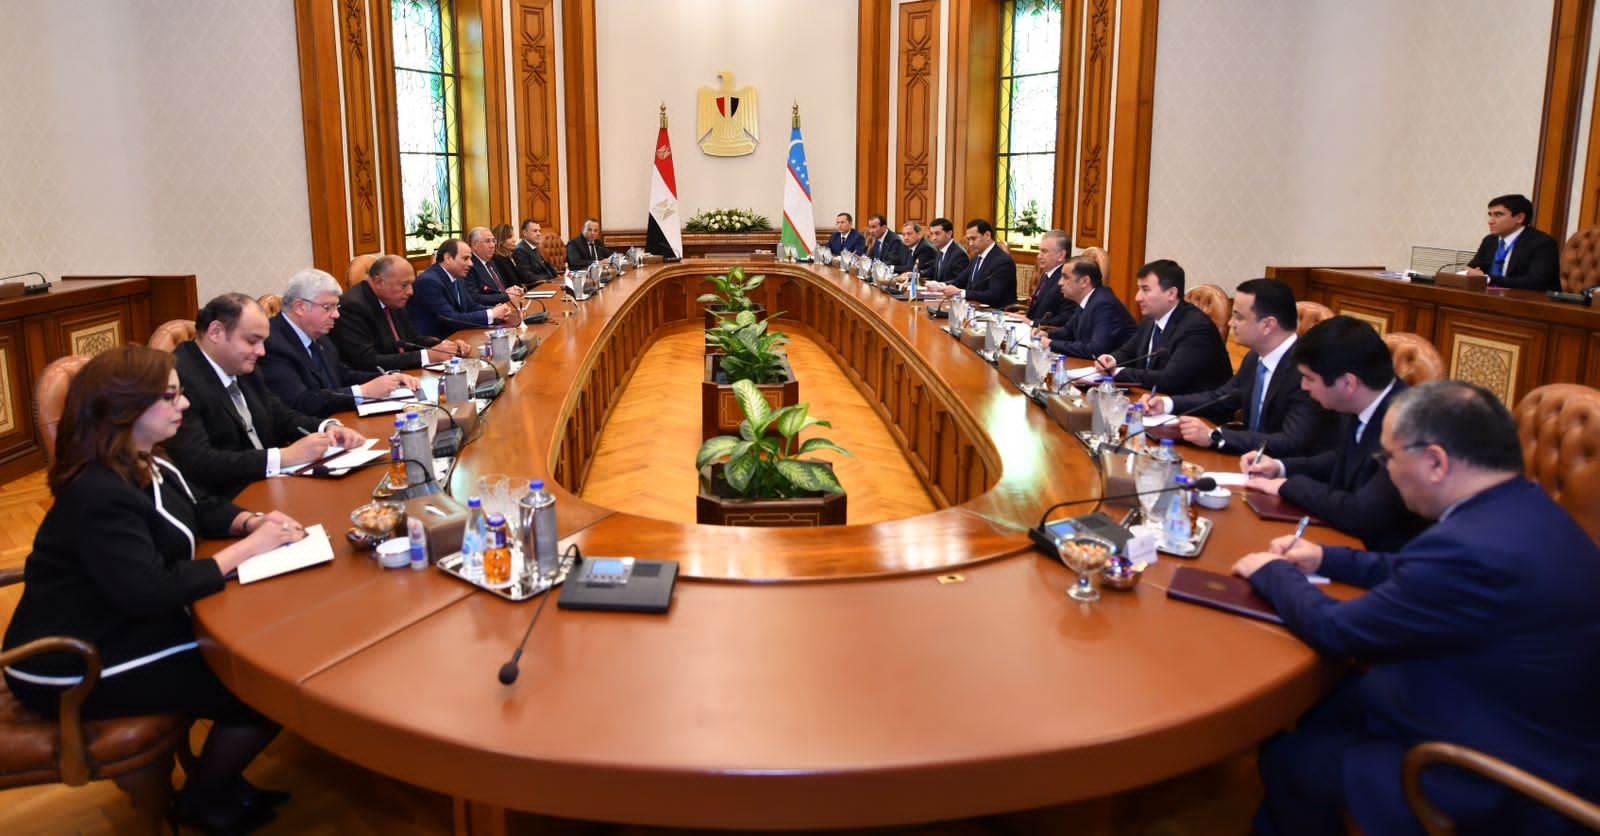 جلسة مباحثات مشتركة بين الجانبين المصري والاوزبكستاني